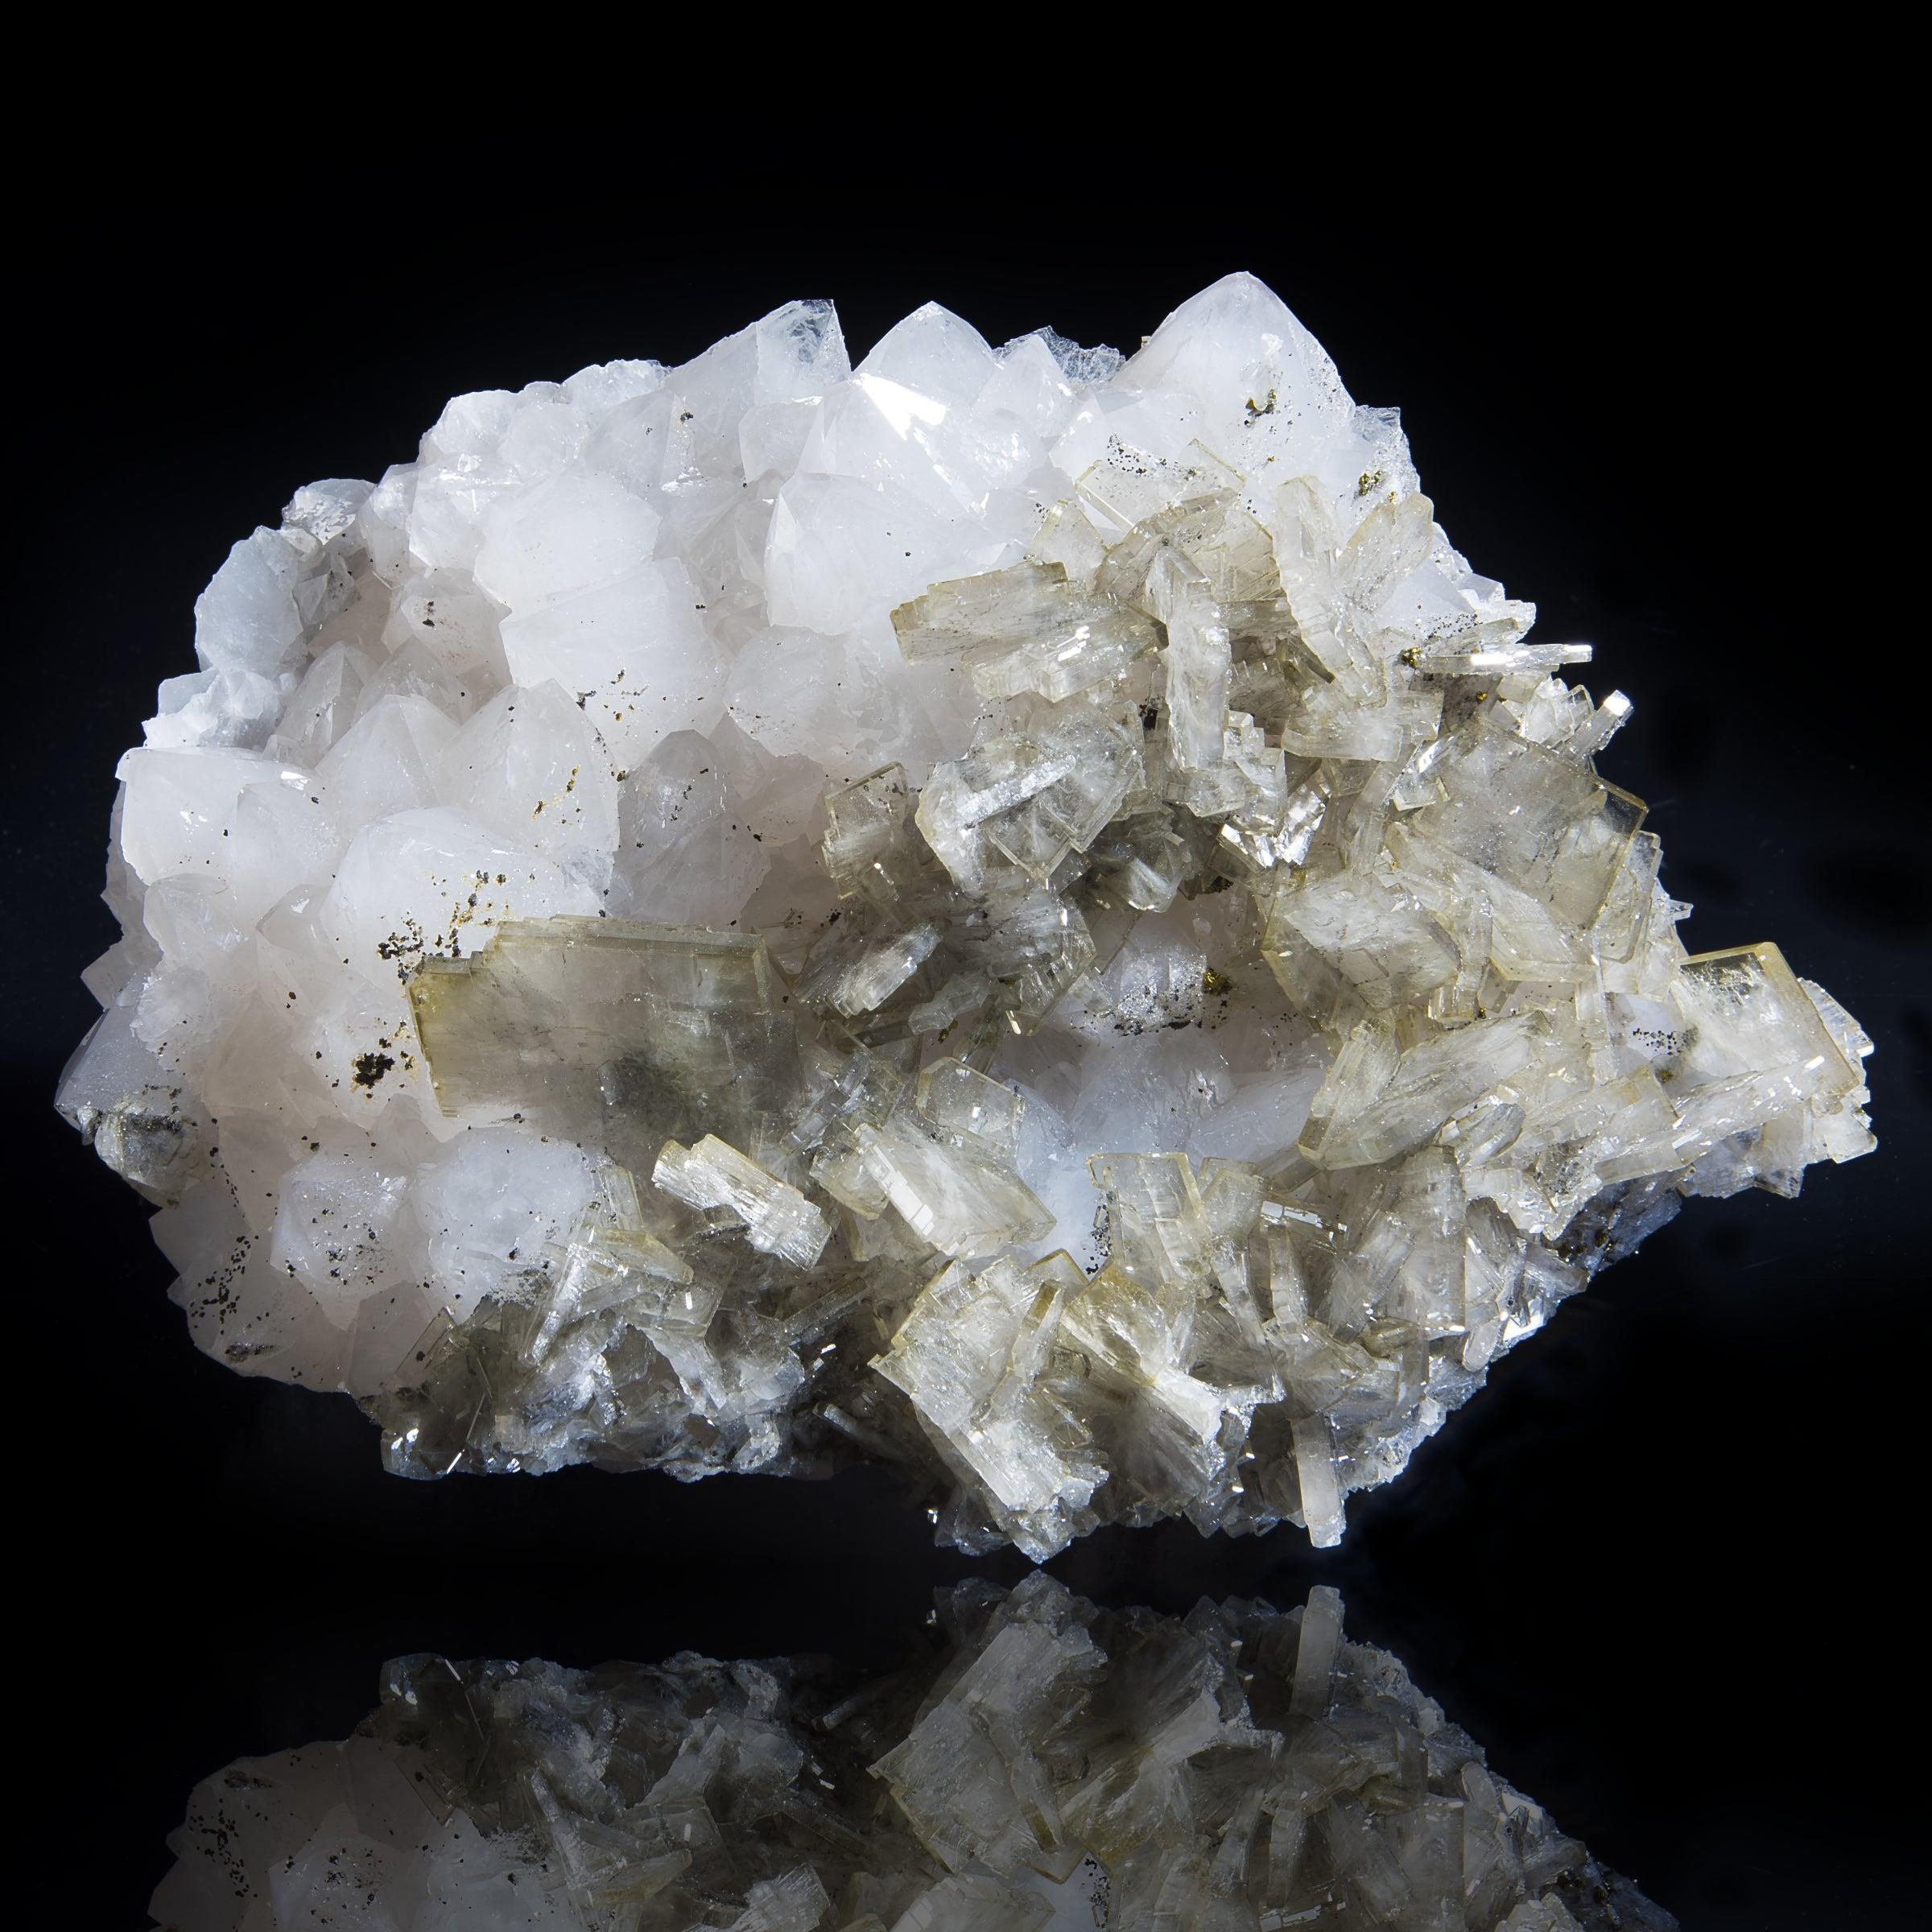 Cerro Warihuyn, Miraflores Peru

Baryt ist bekannt für seine große Farbvielfalt und seine vielfältigen Kristallformen und -gewohnheiten. Dieses Exemplar hat eine goldgraue Färbung. Er hat einen unglaublichen Glanz und alle Kristalle sind intakt. Er